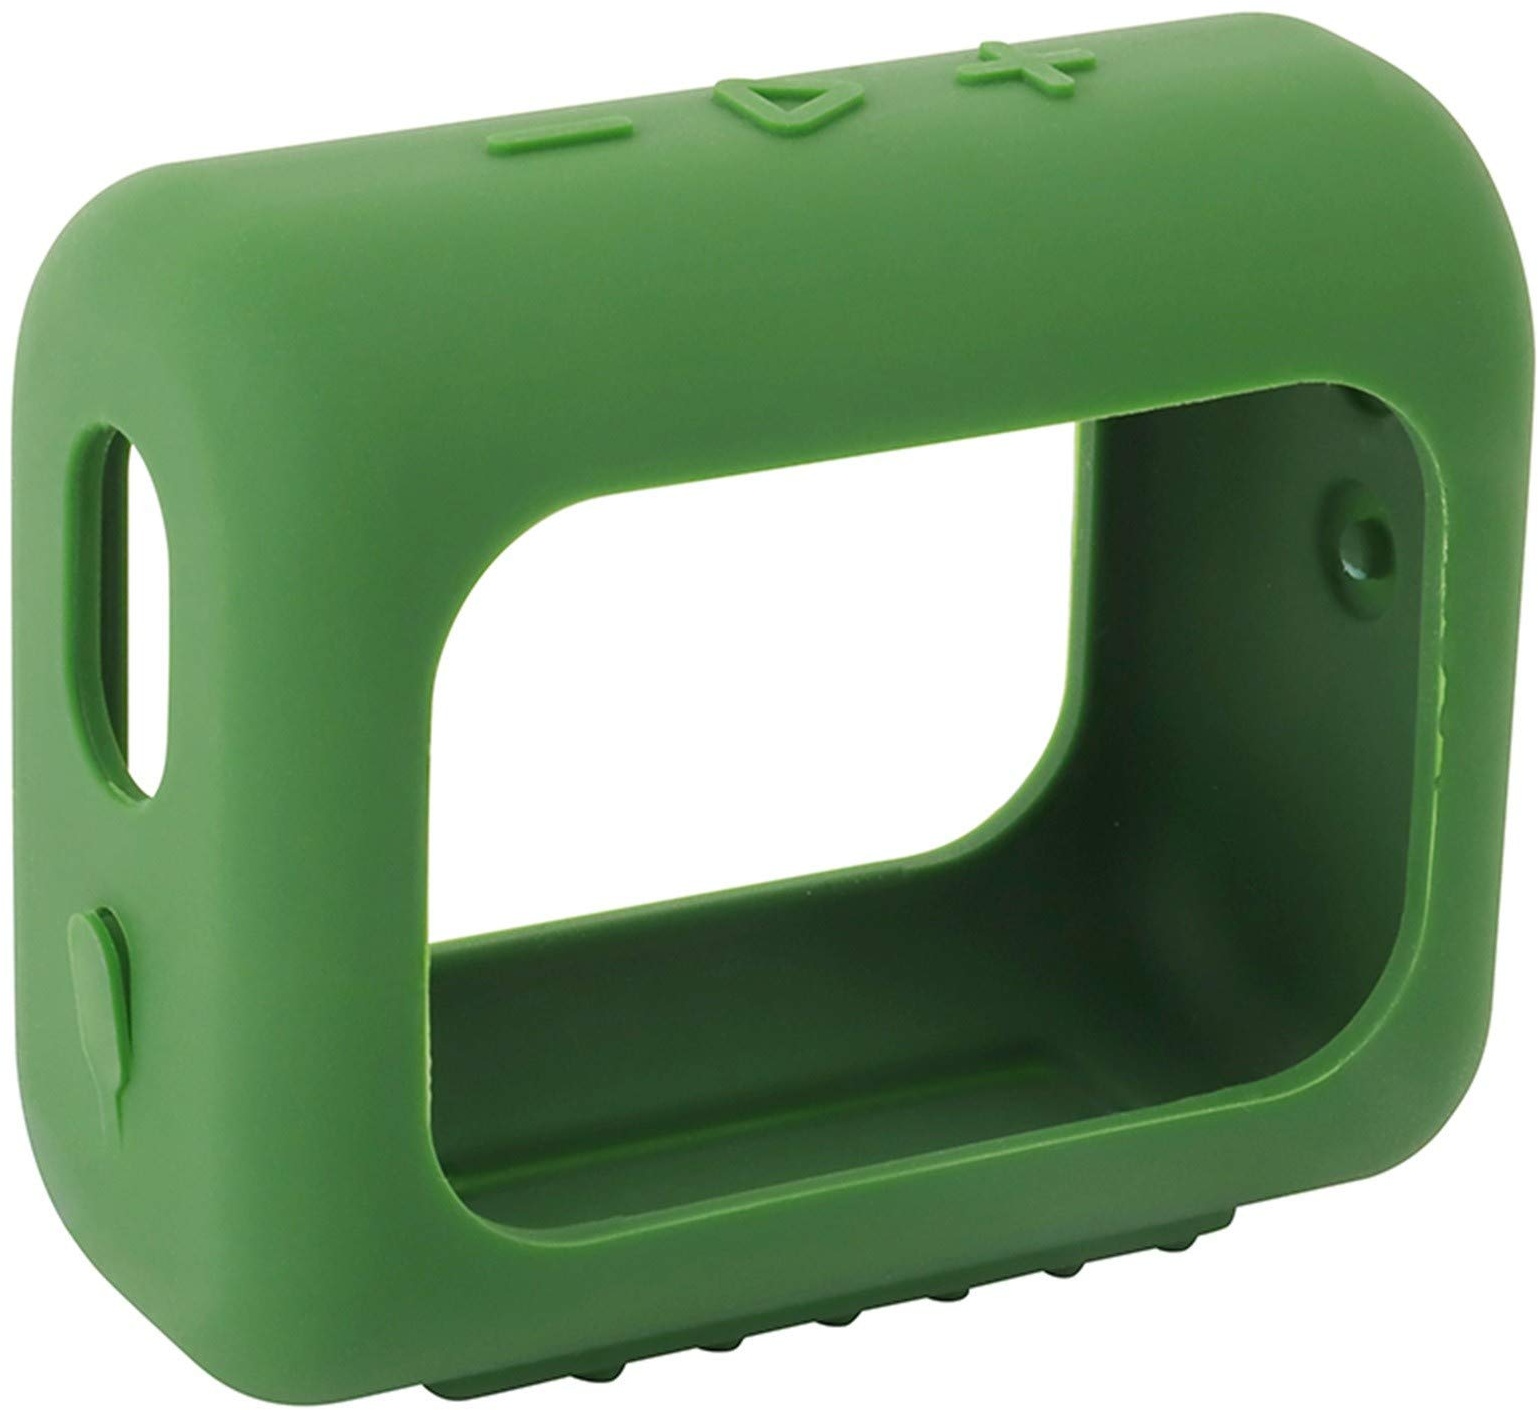 Hülle Ersatz für JBL GO 3 Bluetooth Speaker Headphone Wireless Lautsprecher Case Silicone Bluetooth Case zubehör Schutz Silikonhülle Abdeckung Protective Cover Schutzhülle (Army Green)